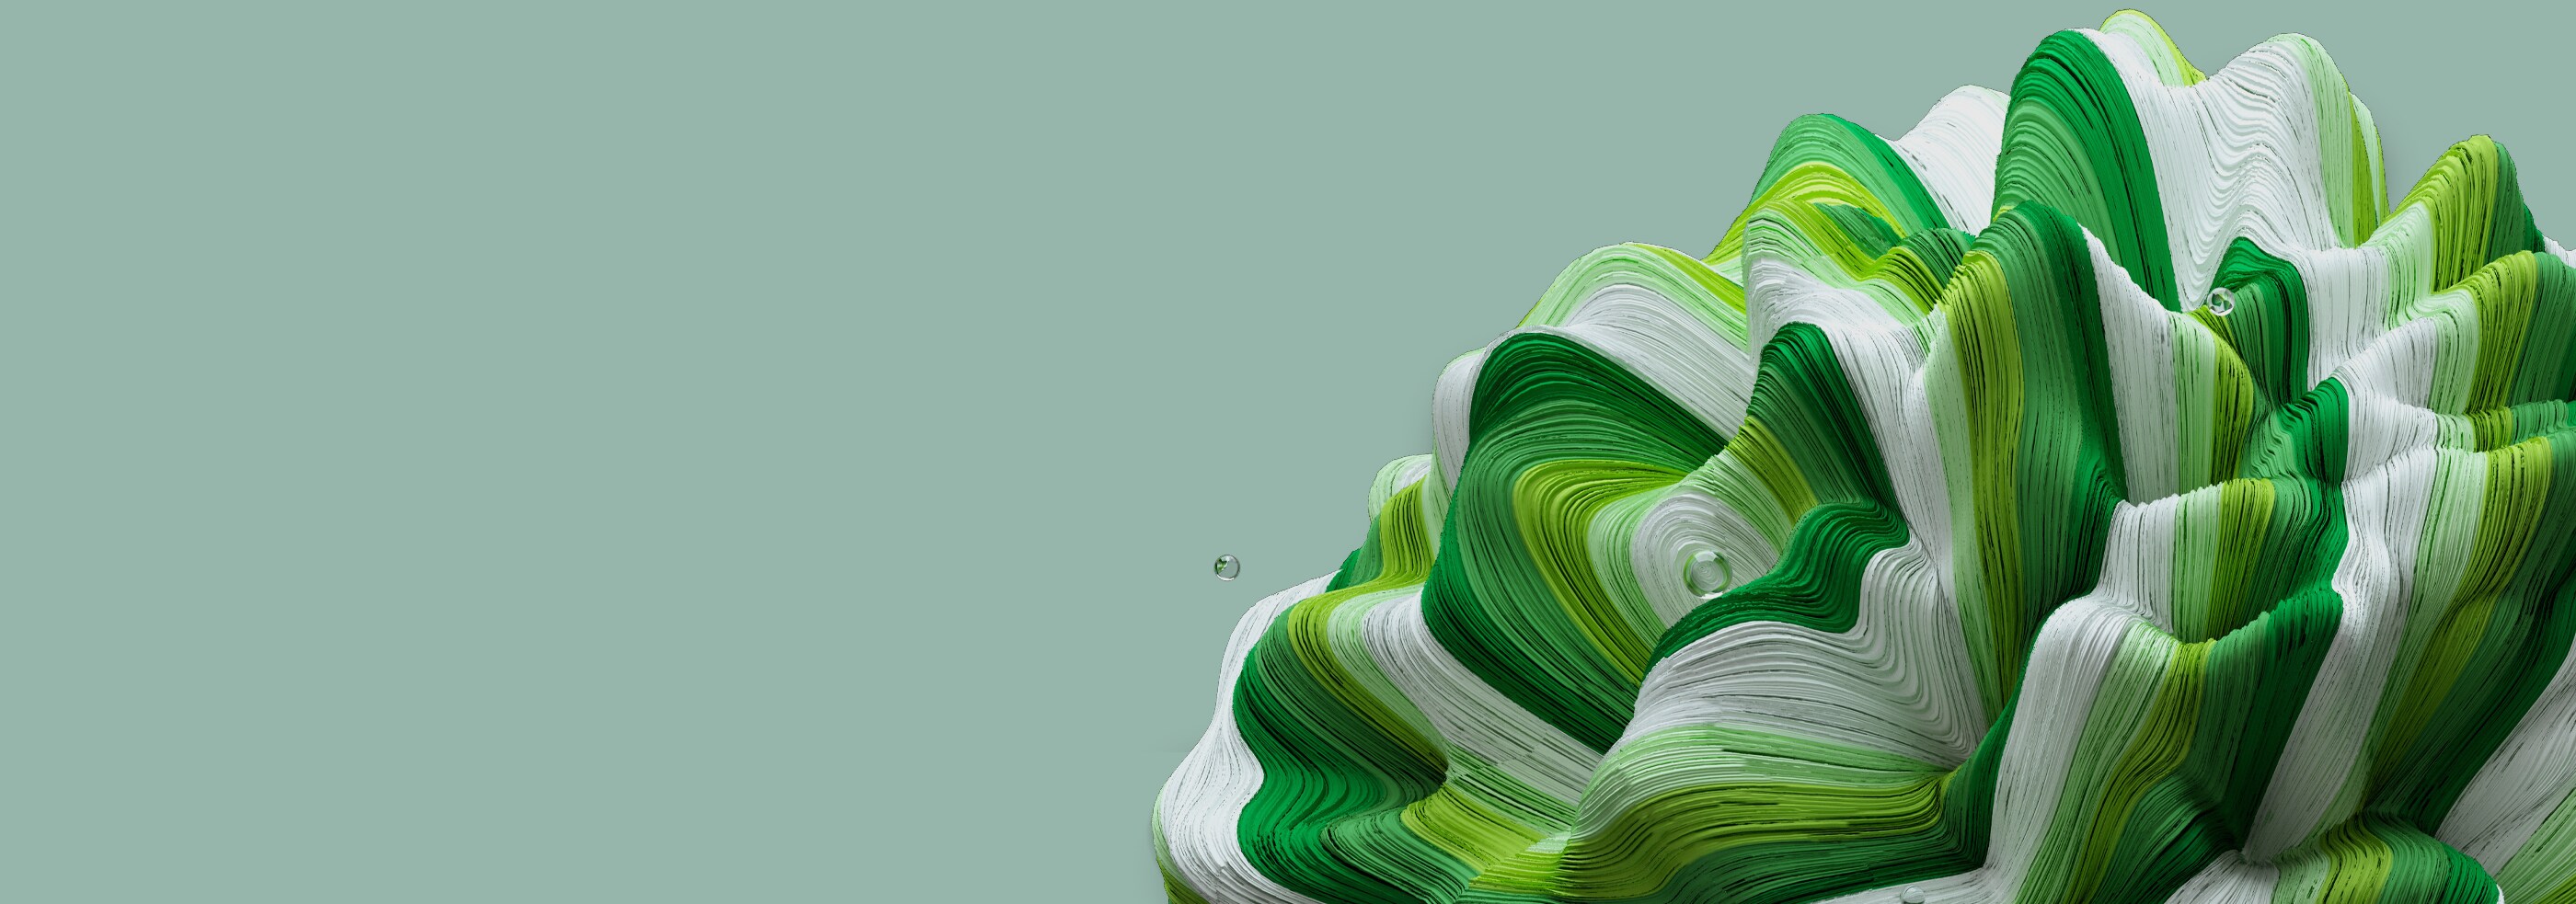 Motif circulaire et torsadé vert et blanc semblable à une fleur abstraite